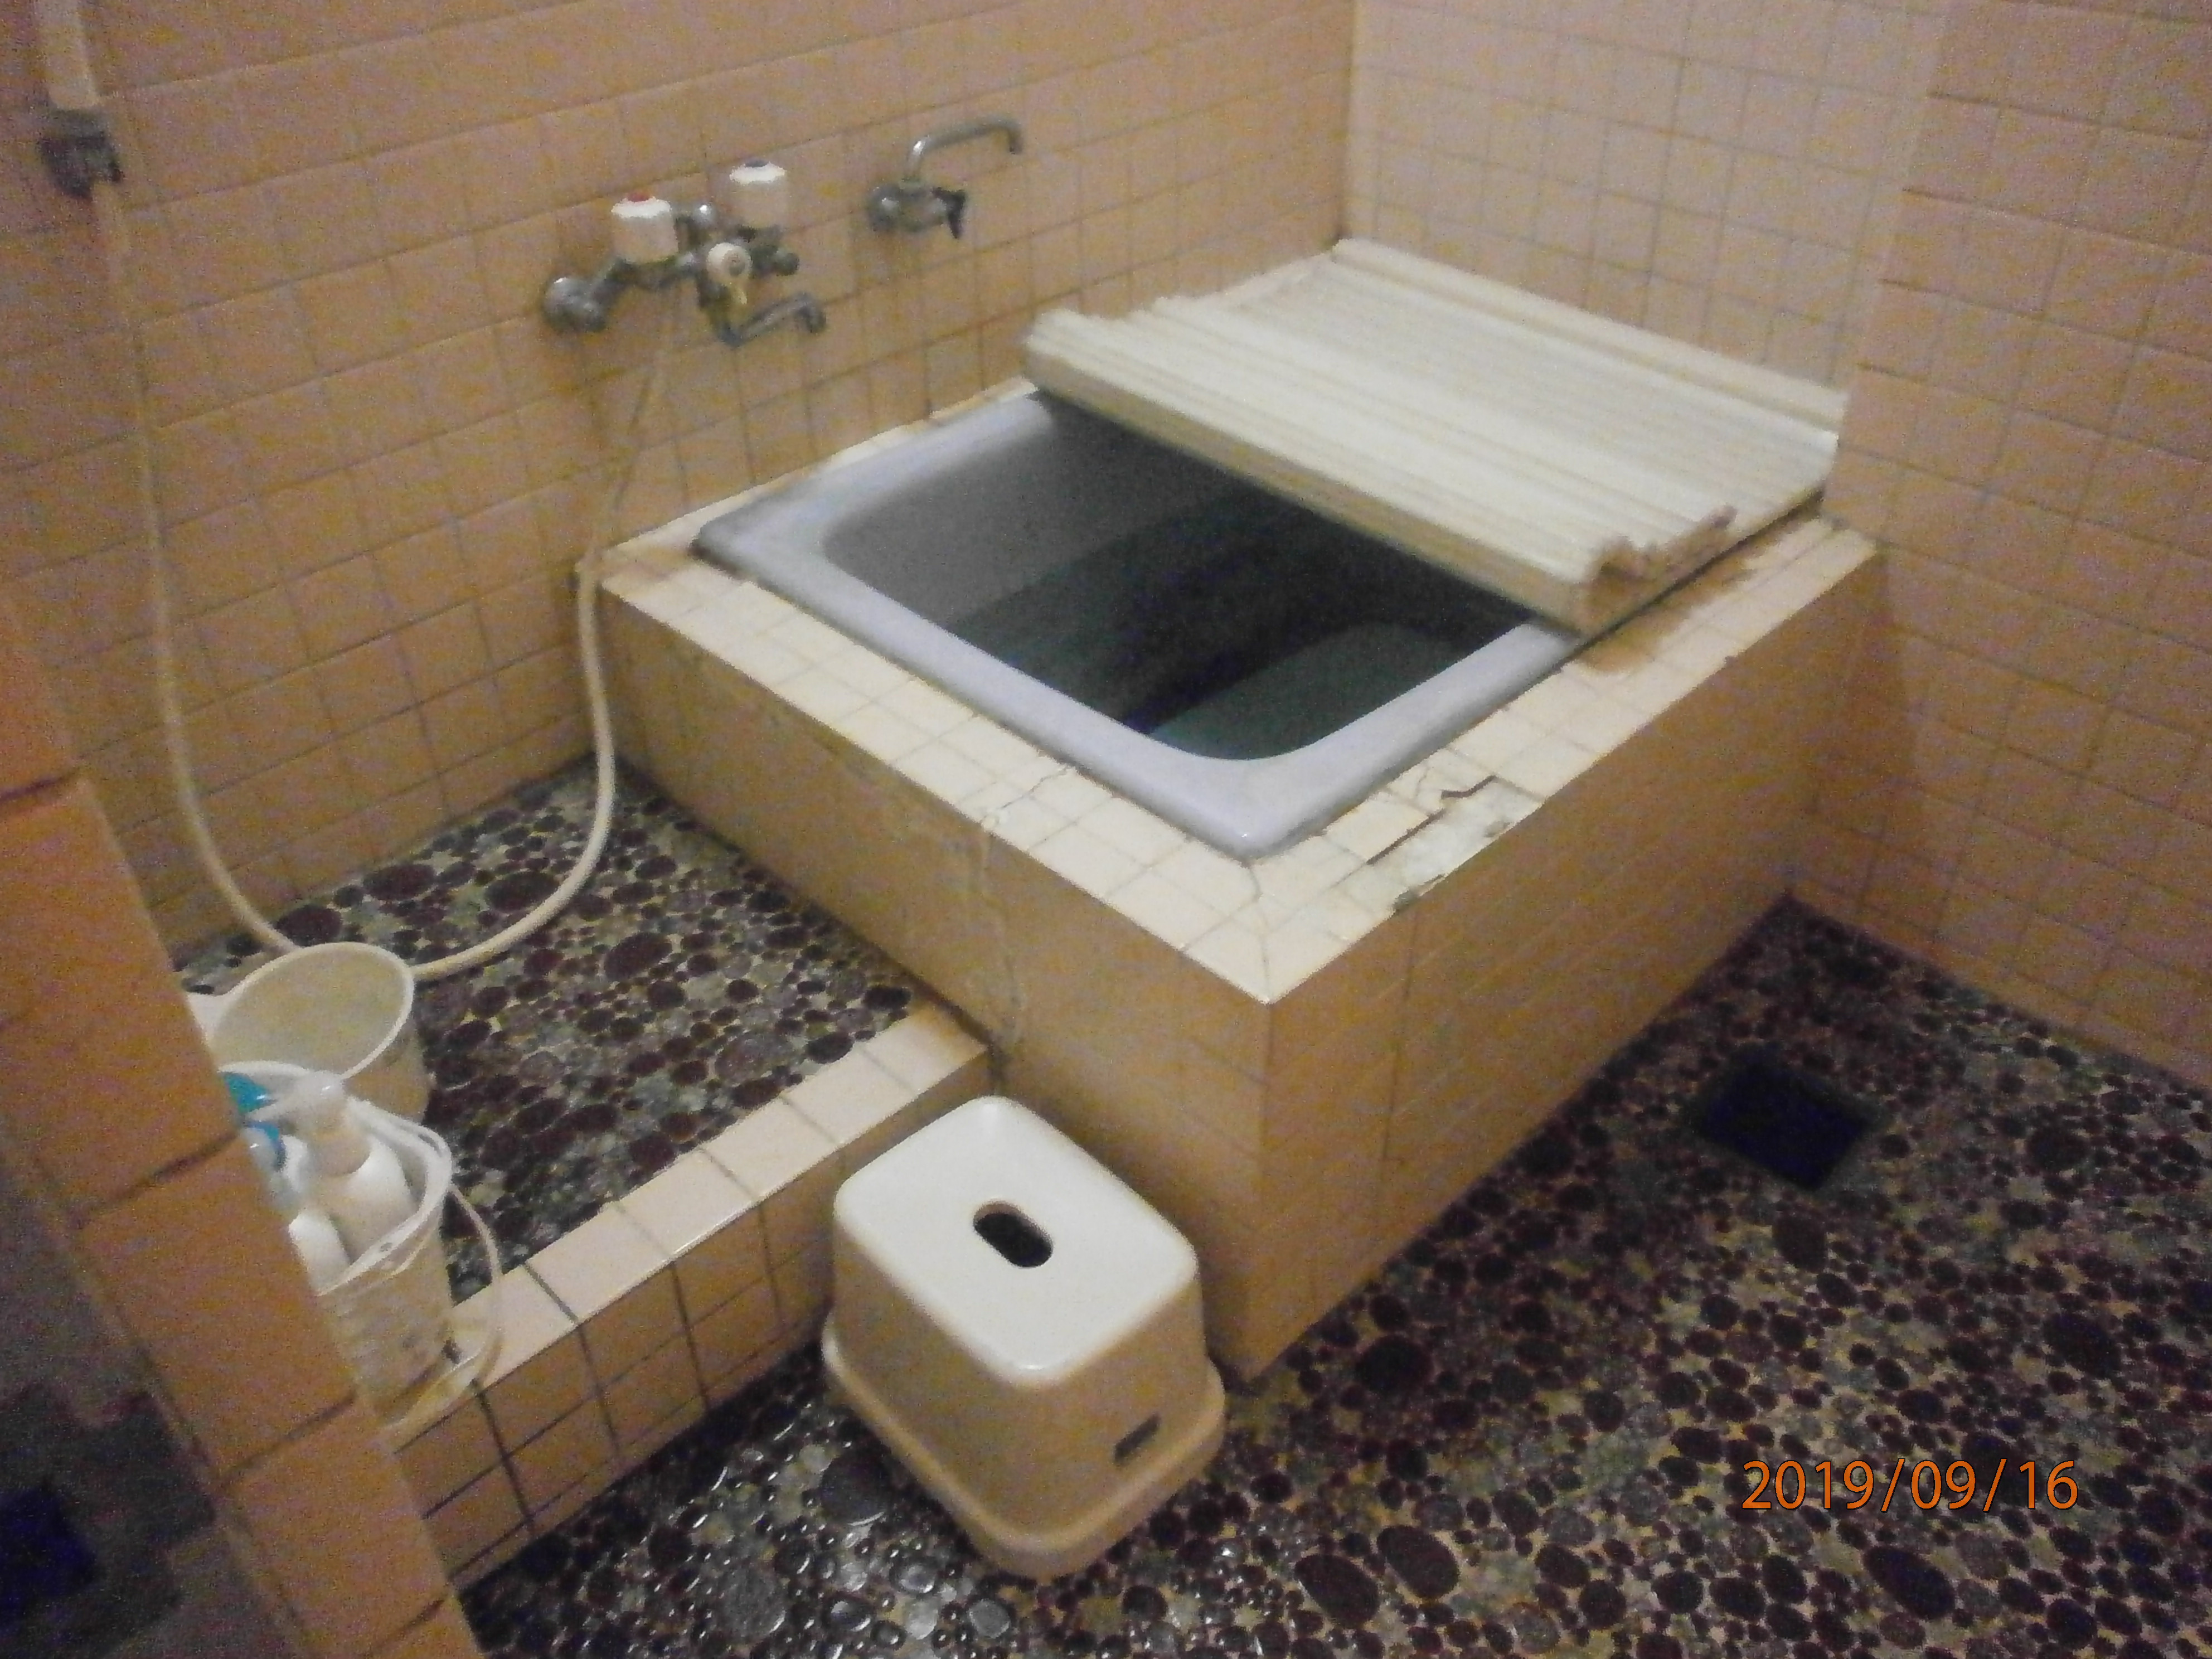 天然木製浴槽 お風呂 家庭用 大人用 バスタブ 浴槽 リラックス お風呂グッズ 蓋なし 成人風呂バケツ - 9